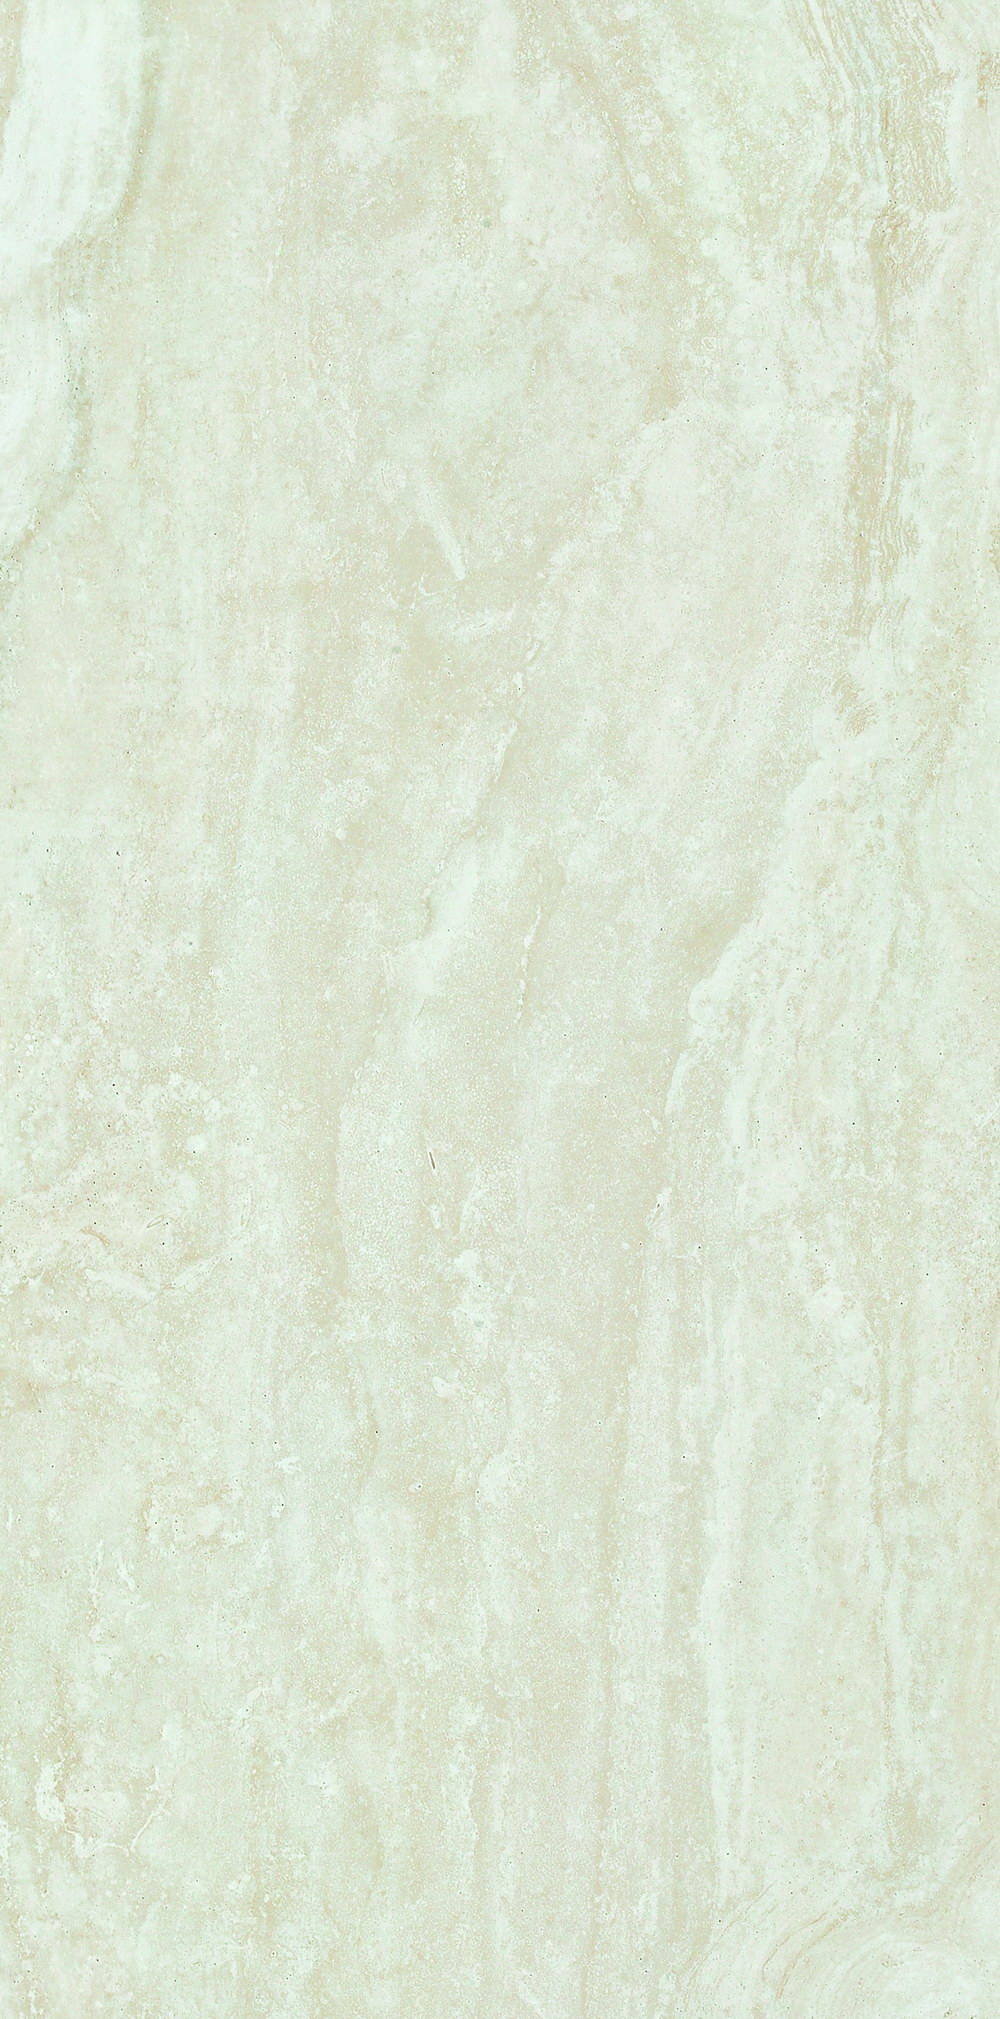 罗马白洞石HPG84037(800x400mm)